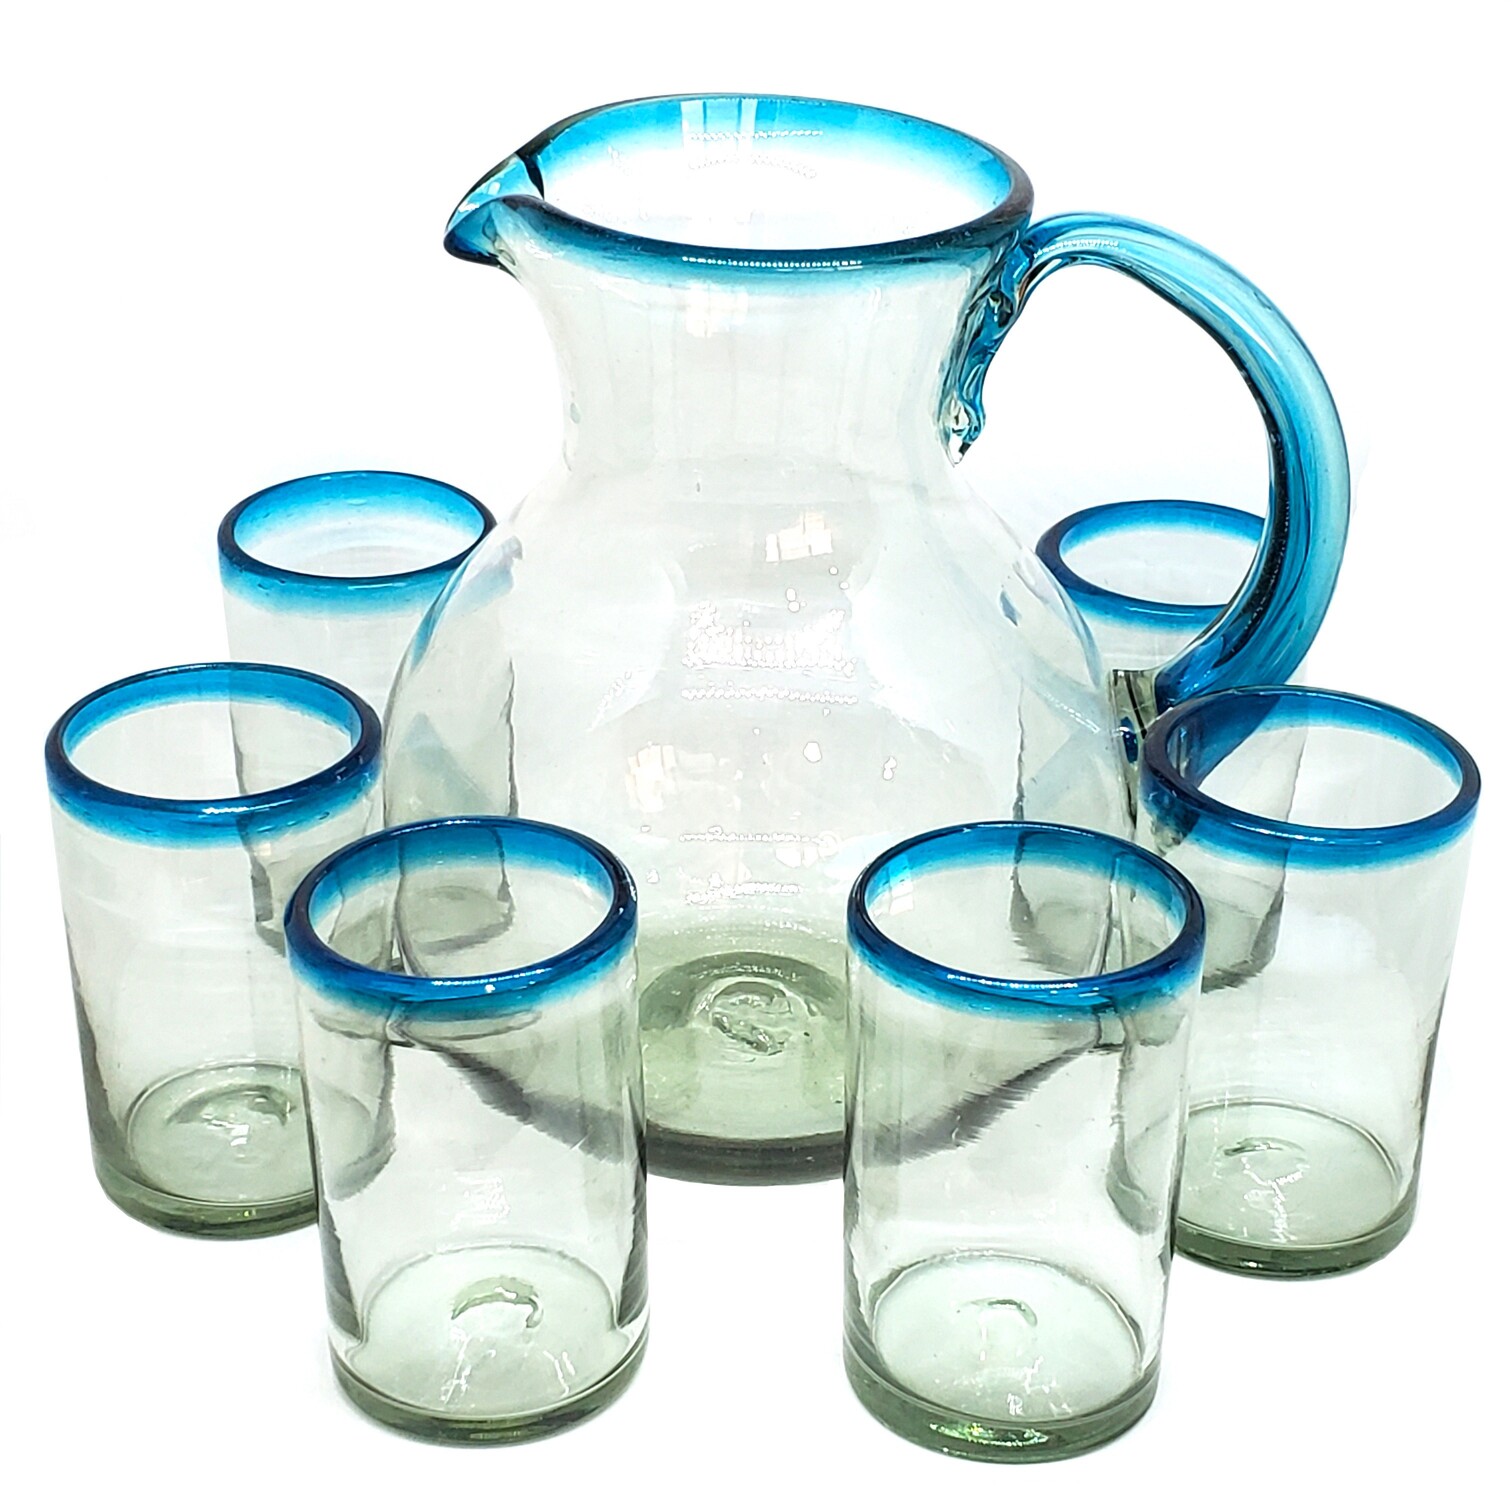 VIDRIO SOPLADO / Juego de jarra y 6 vasos grandes con borde azul aqua, 120 oz, Vidrio Reciclado, Libre de Plomo y Toxinas